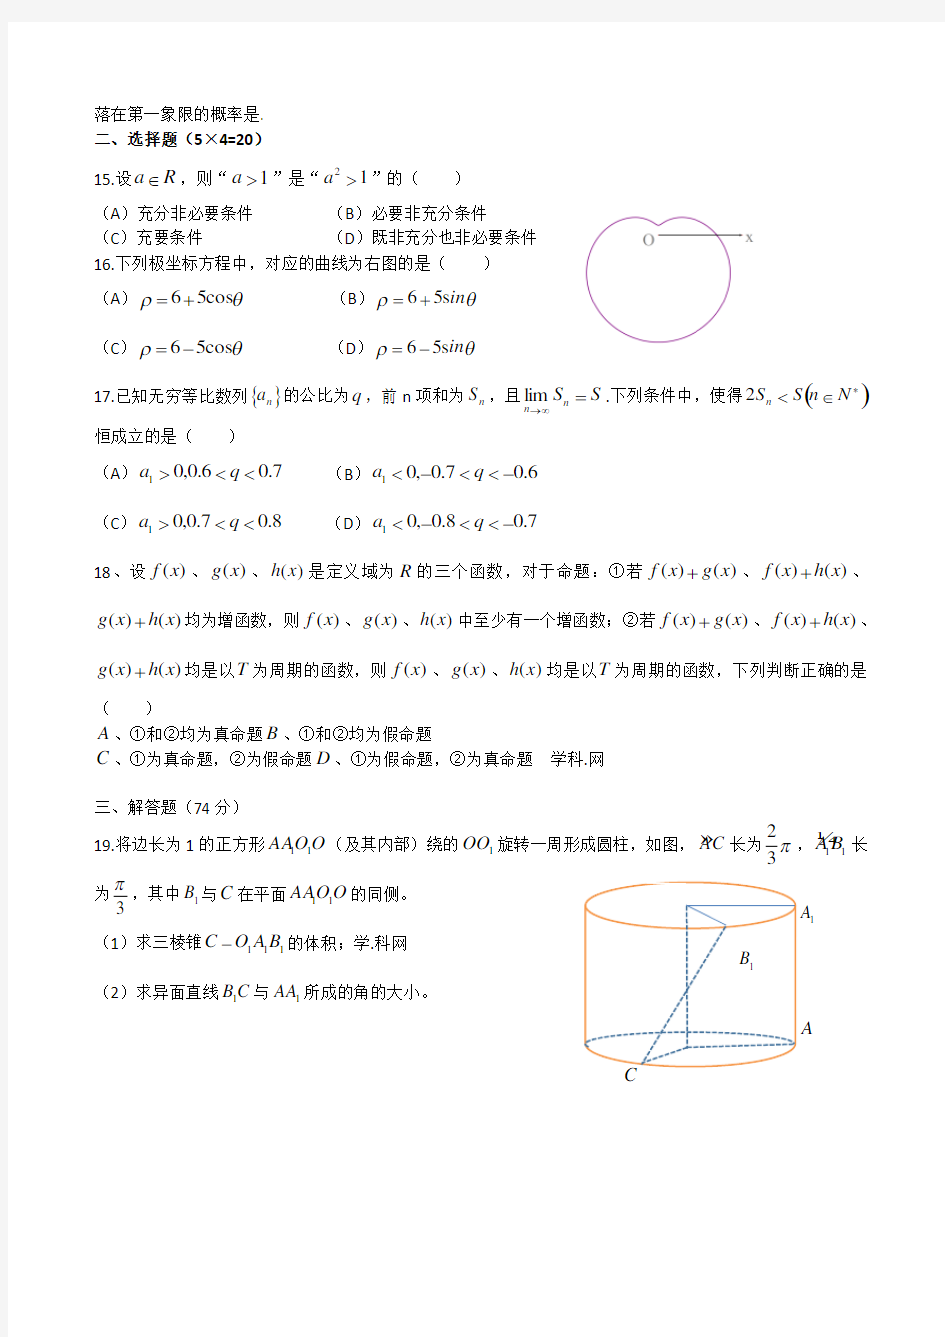 2016年高考试题：理科数学(上海卷)_中小学教育网